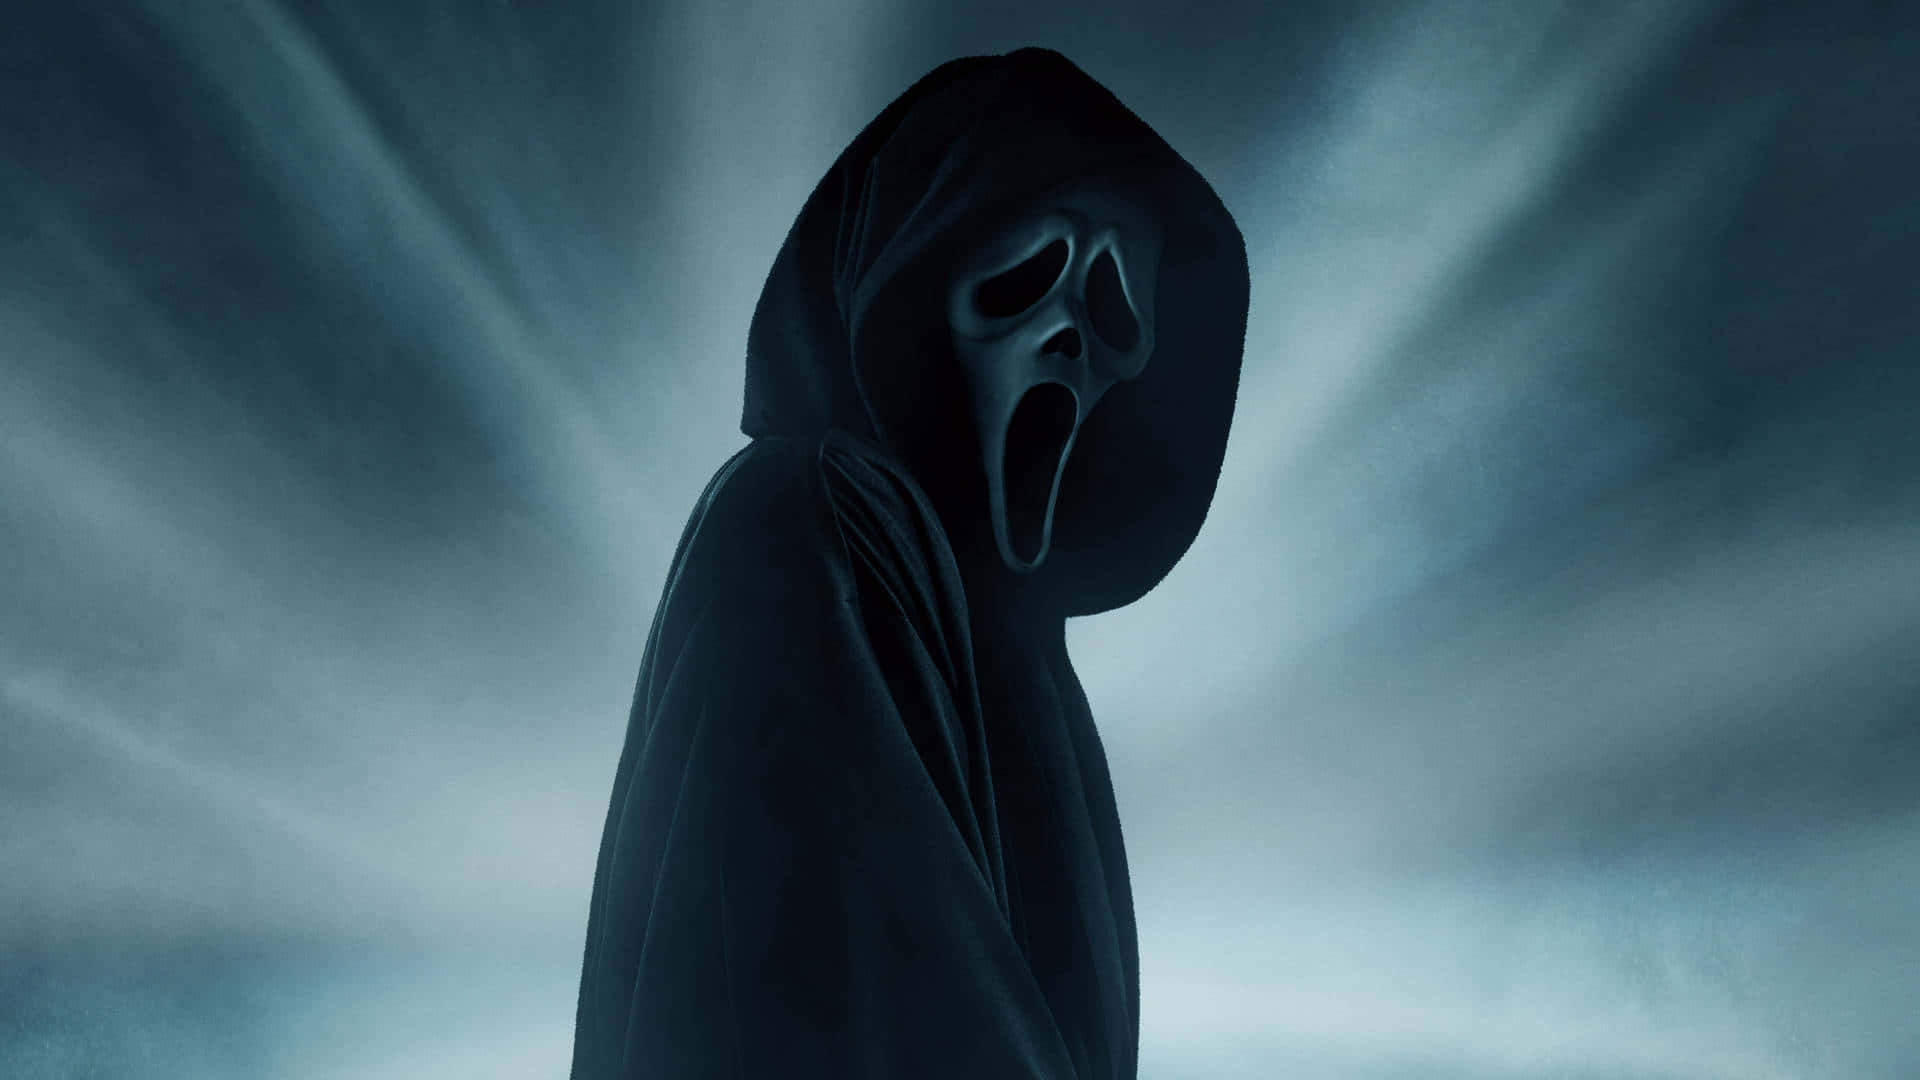 Download Backlight Ghost Face Pfp Wallpaper